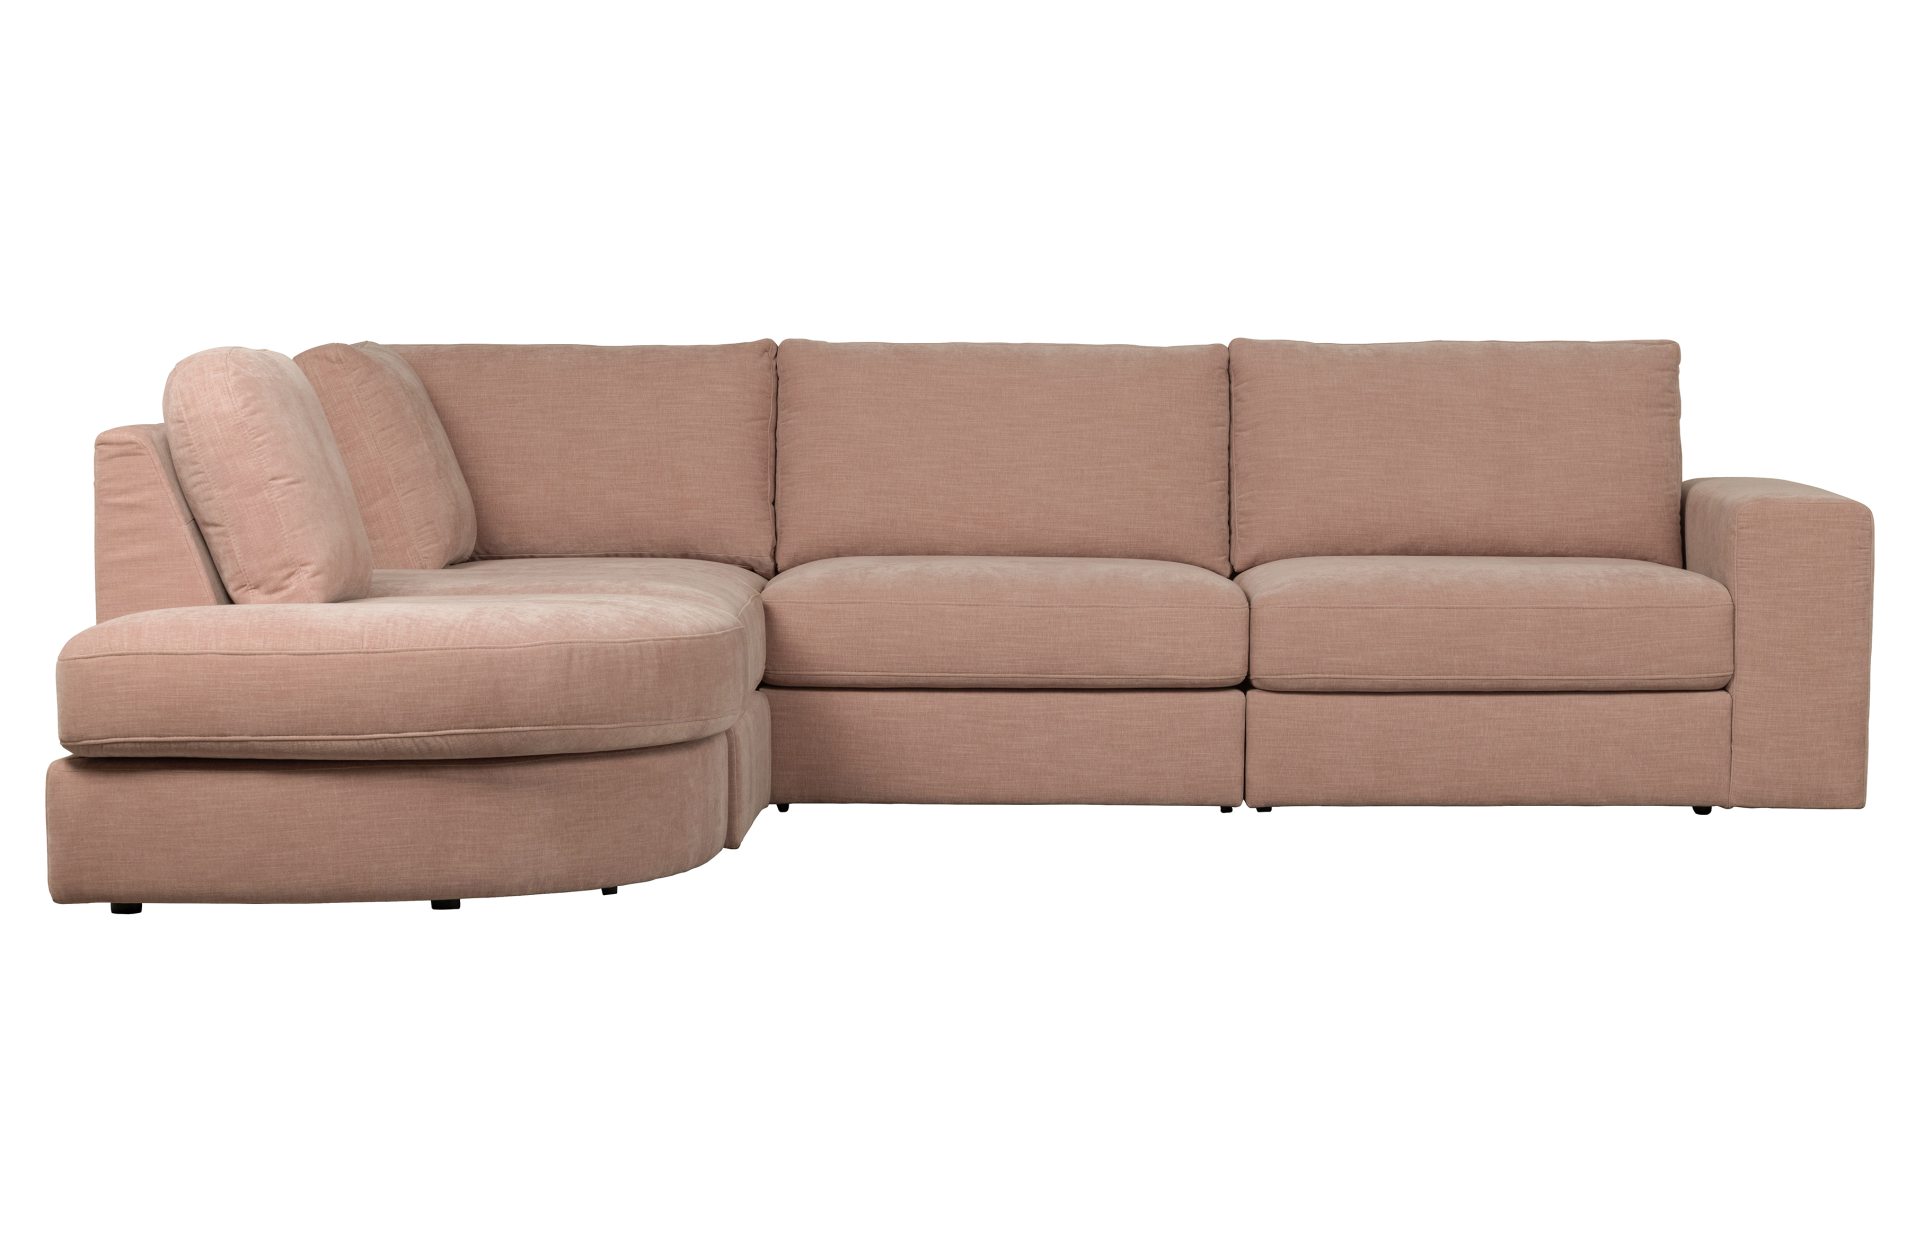 Das Modulsofa Family überzeugt mit seinem modernen Design. Das Seat Element wurde aus Gewebe-Stoff gefertigt, welcher einen einen rosa Farbton besitzen. Das Gestell ist aus Metall und hat eine schwarze Farbe. Das Element hat eine Sitzhöhe von 44 cm.